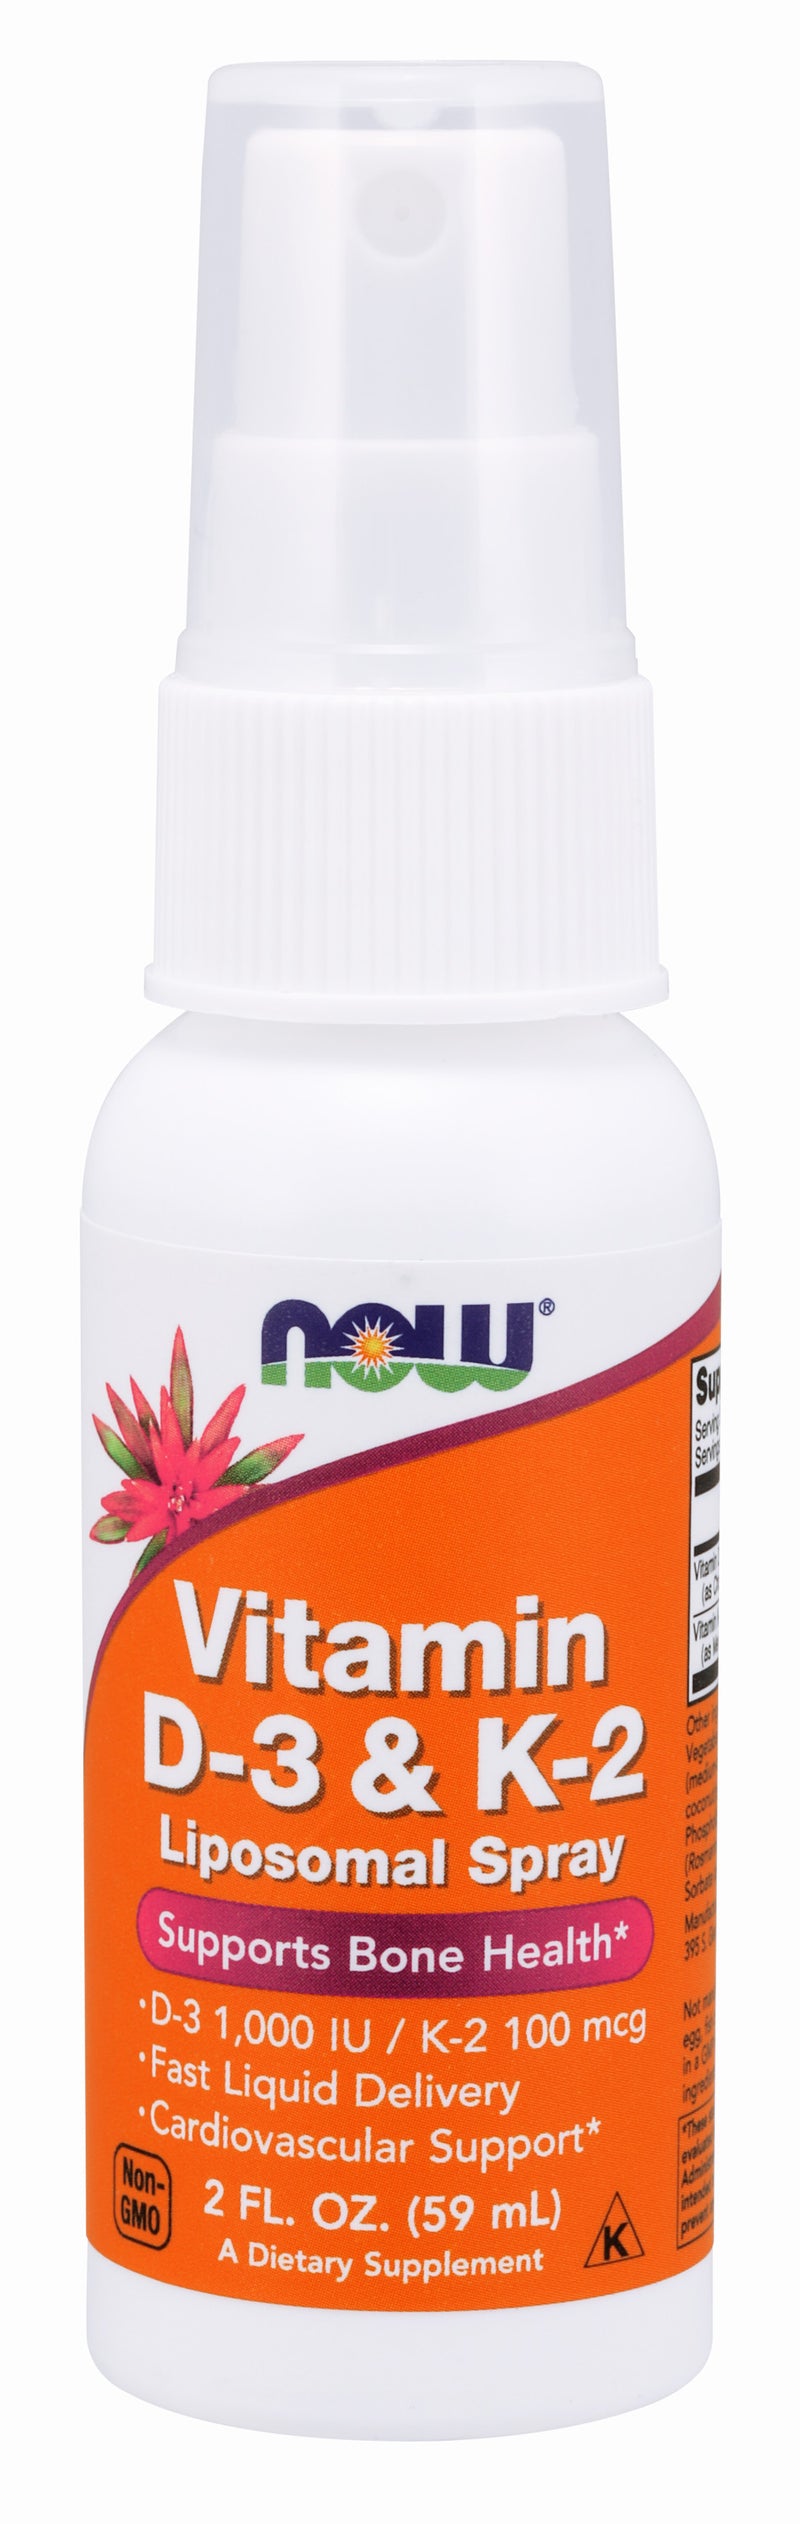 Vitamin D-3 & K-2 Liposomal Spray 2 fl oz (59 ml)